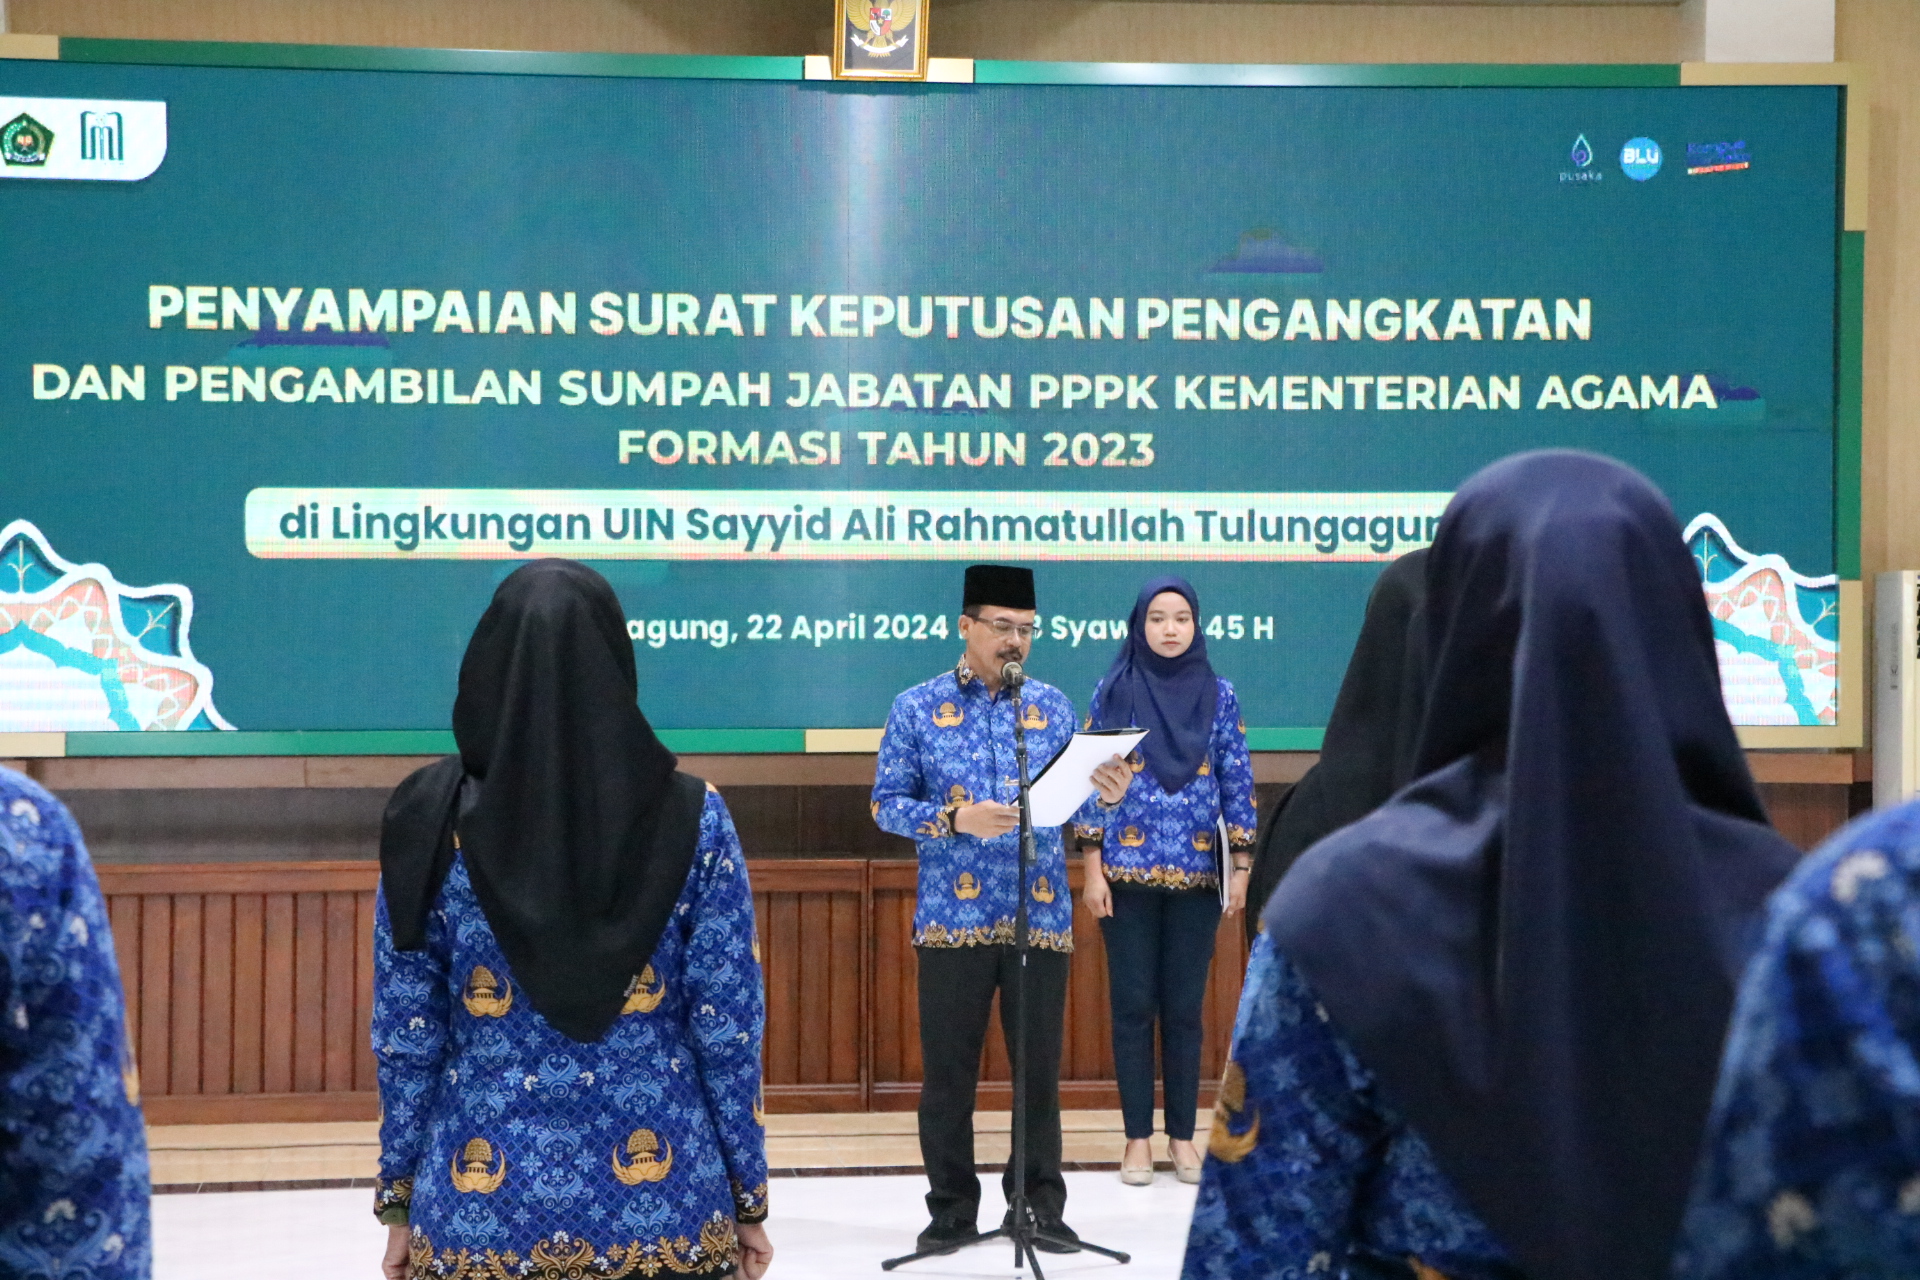 Rektor Lantik 7 PPPK Formasi Tahun 2023, Beri 3 Pesan : Bestie, Chemistry, dan Silaturahmi!